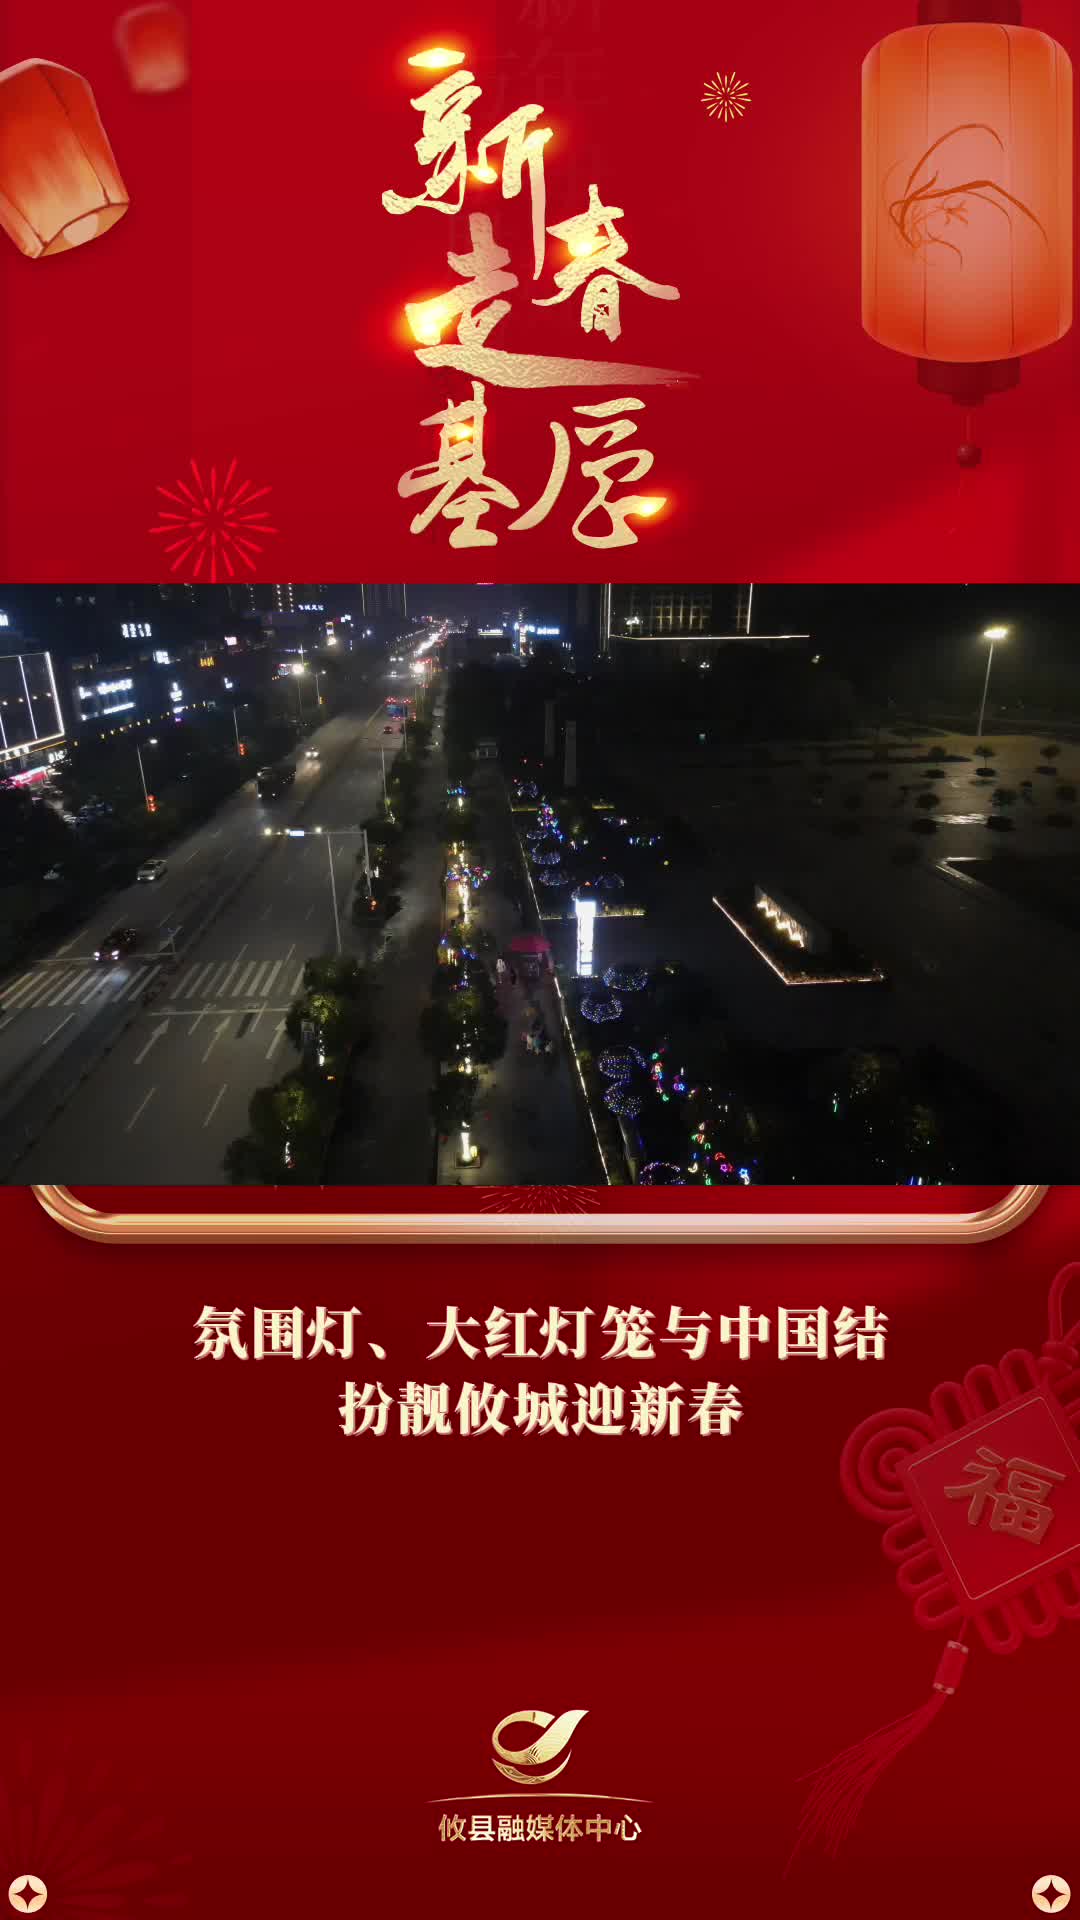 【新春走基层】氛围灯、大红灯笼与中国结扮靓攸城迎新春